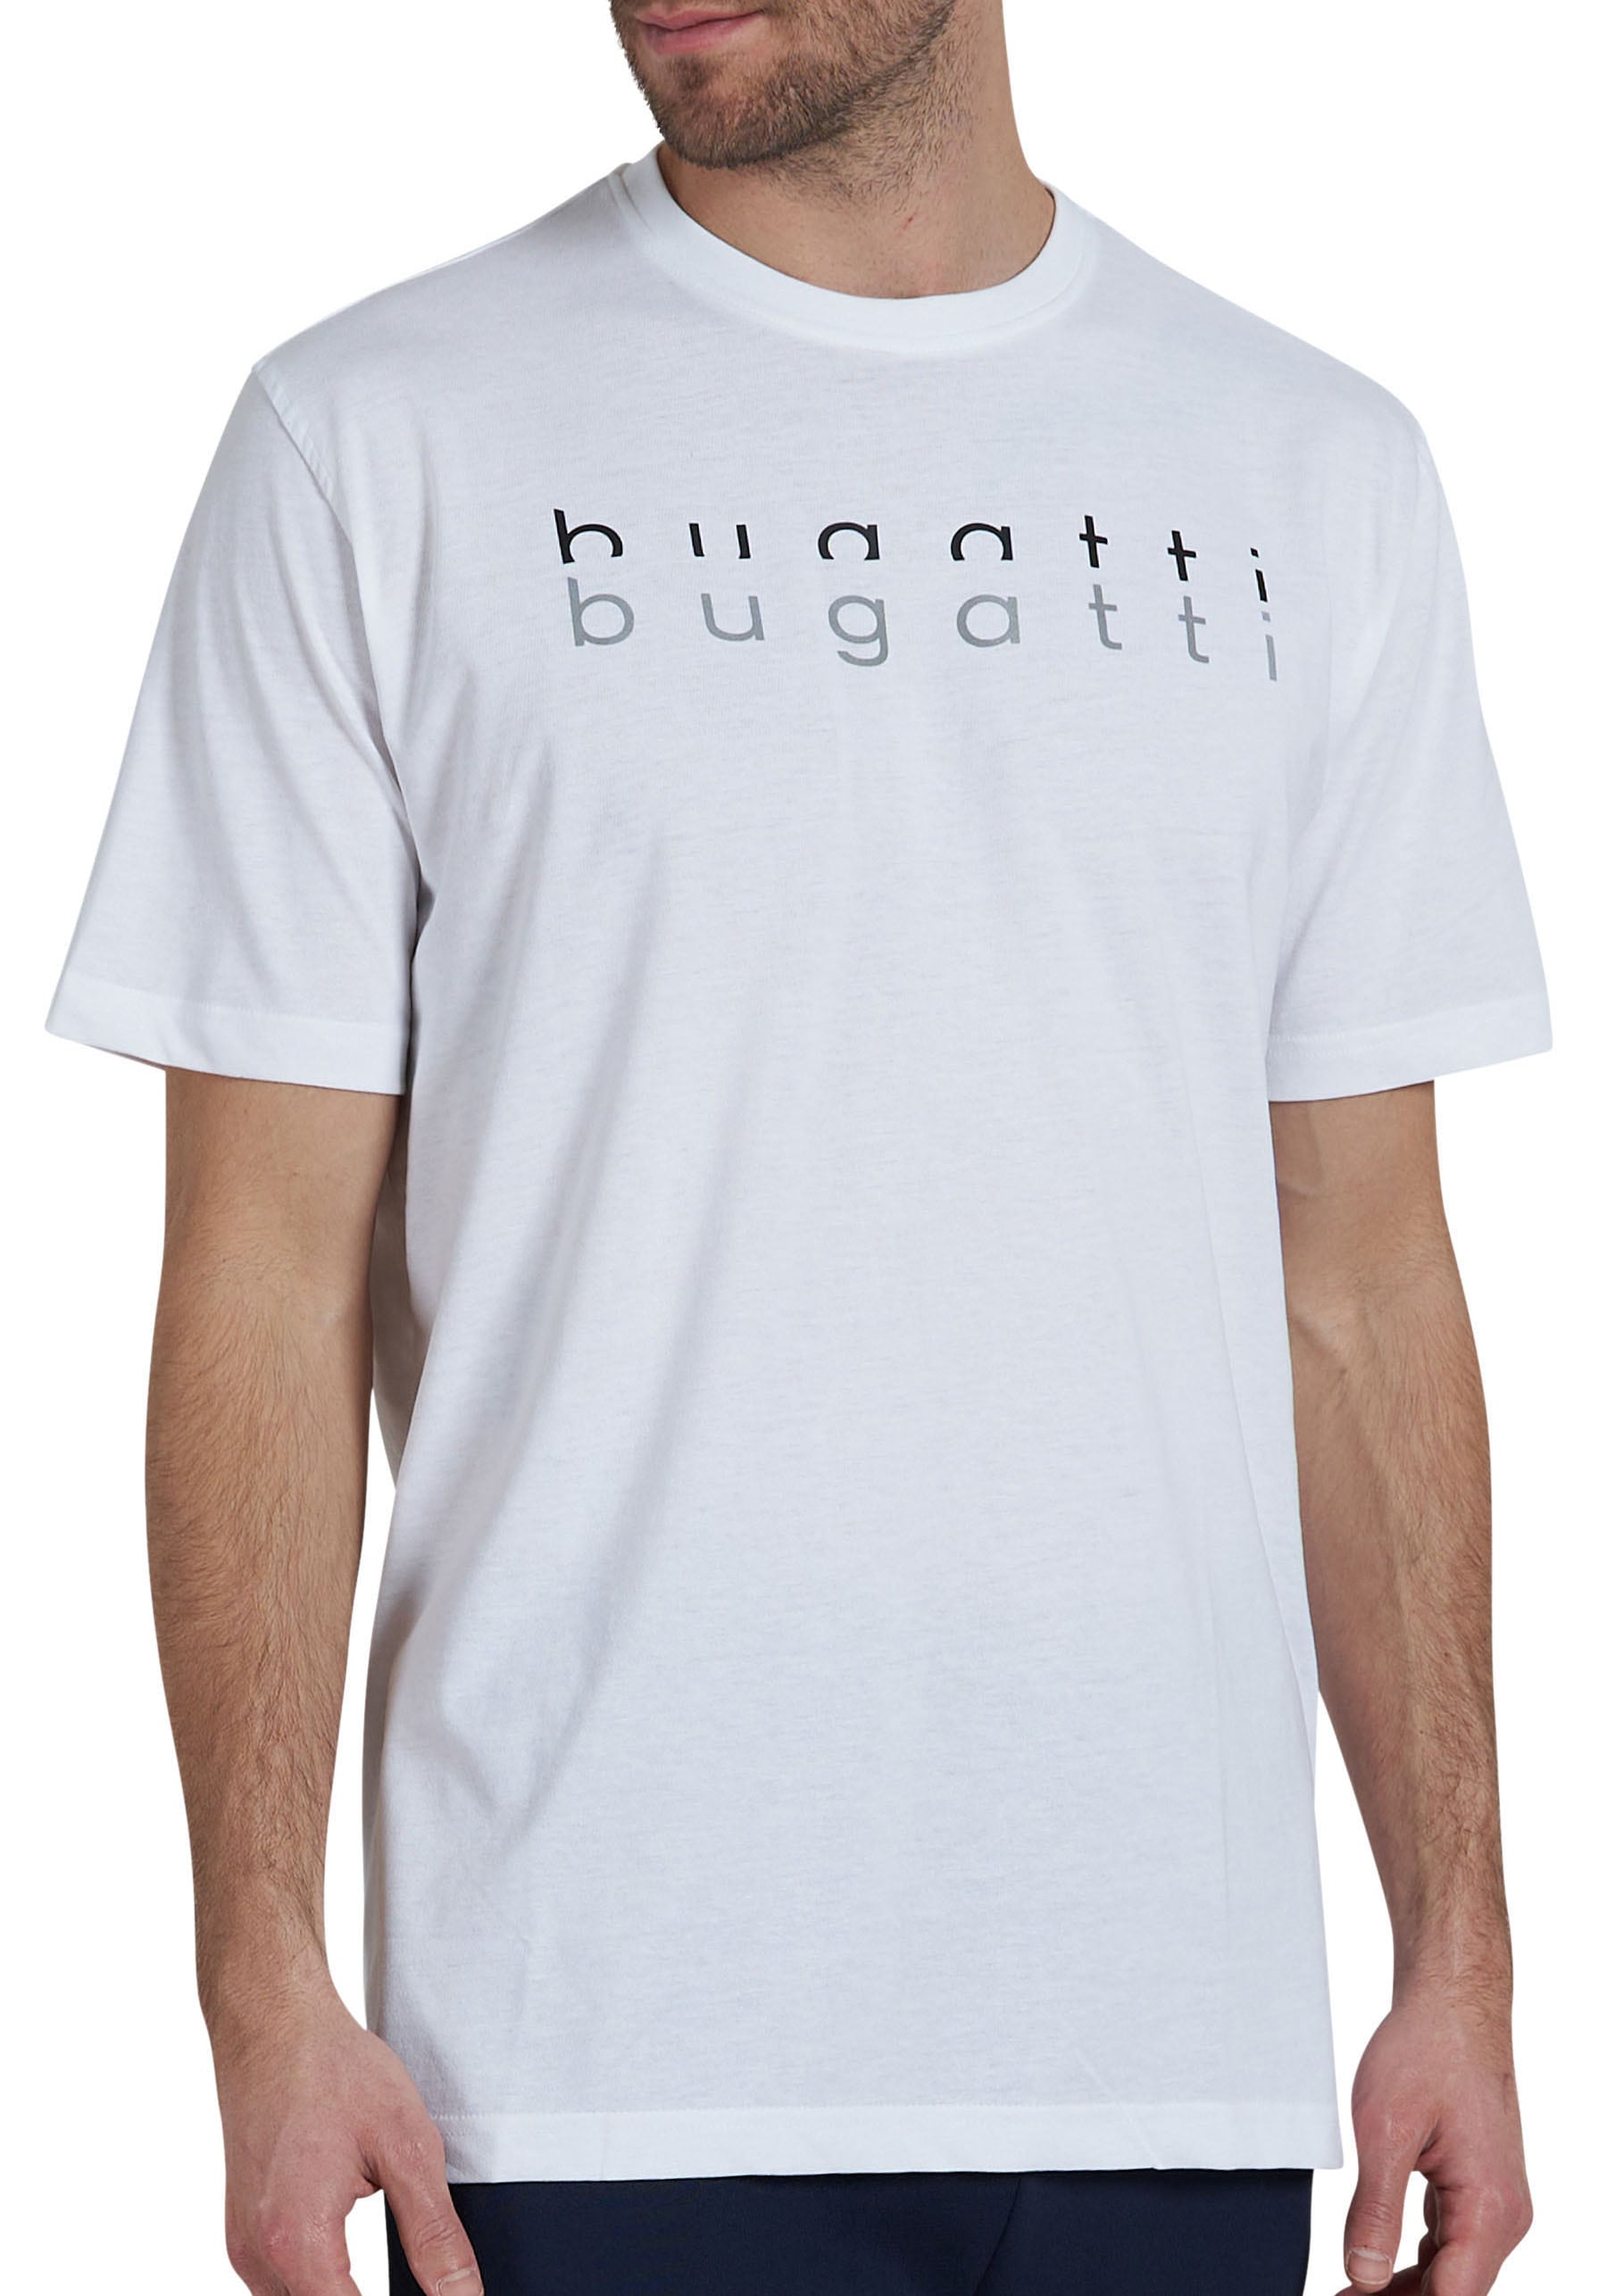 bugatti T-Shirt, für jeden Tag